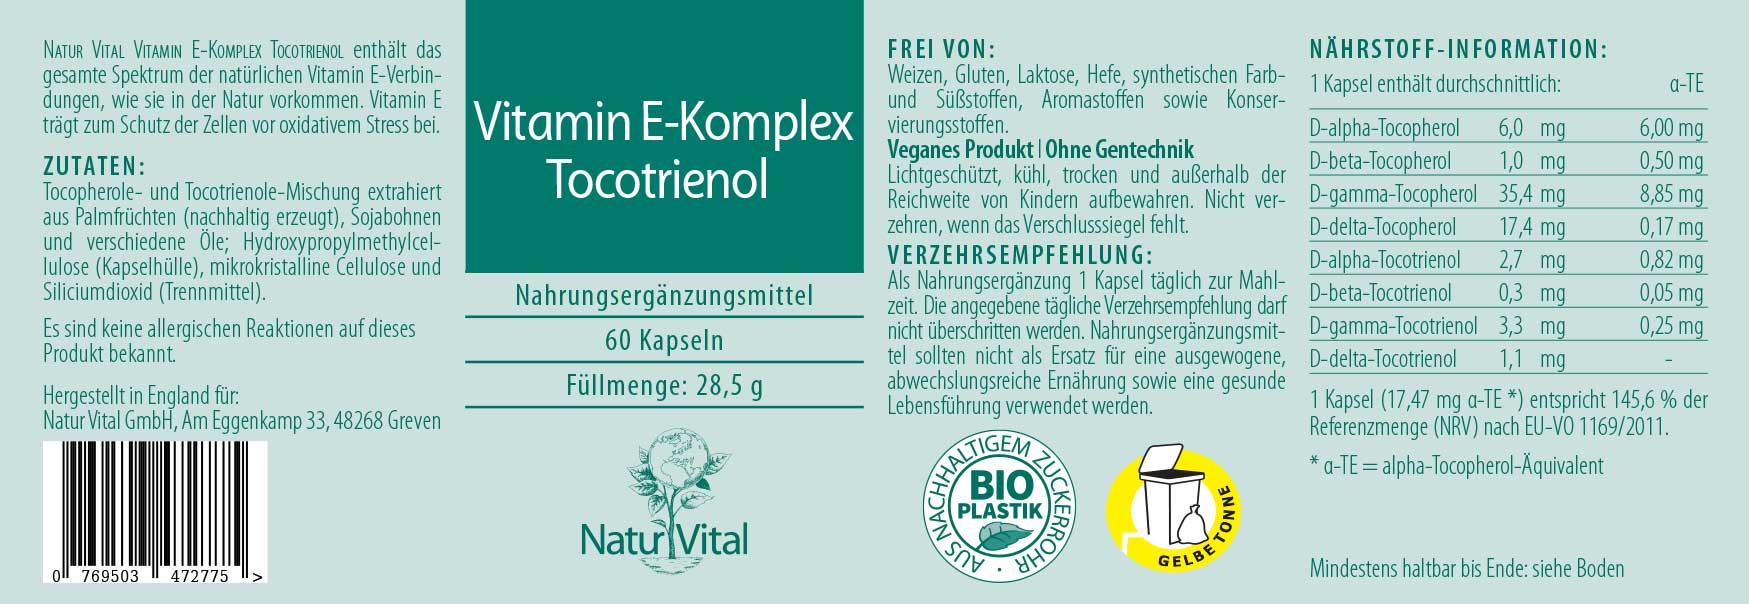 Vitamin E Komplex Tocotrienol Etikett von Natur Vital